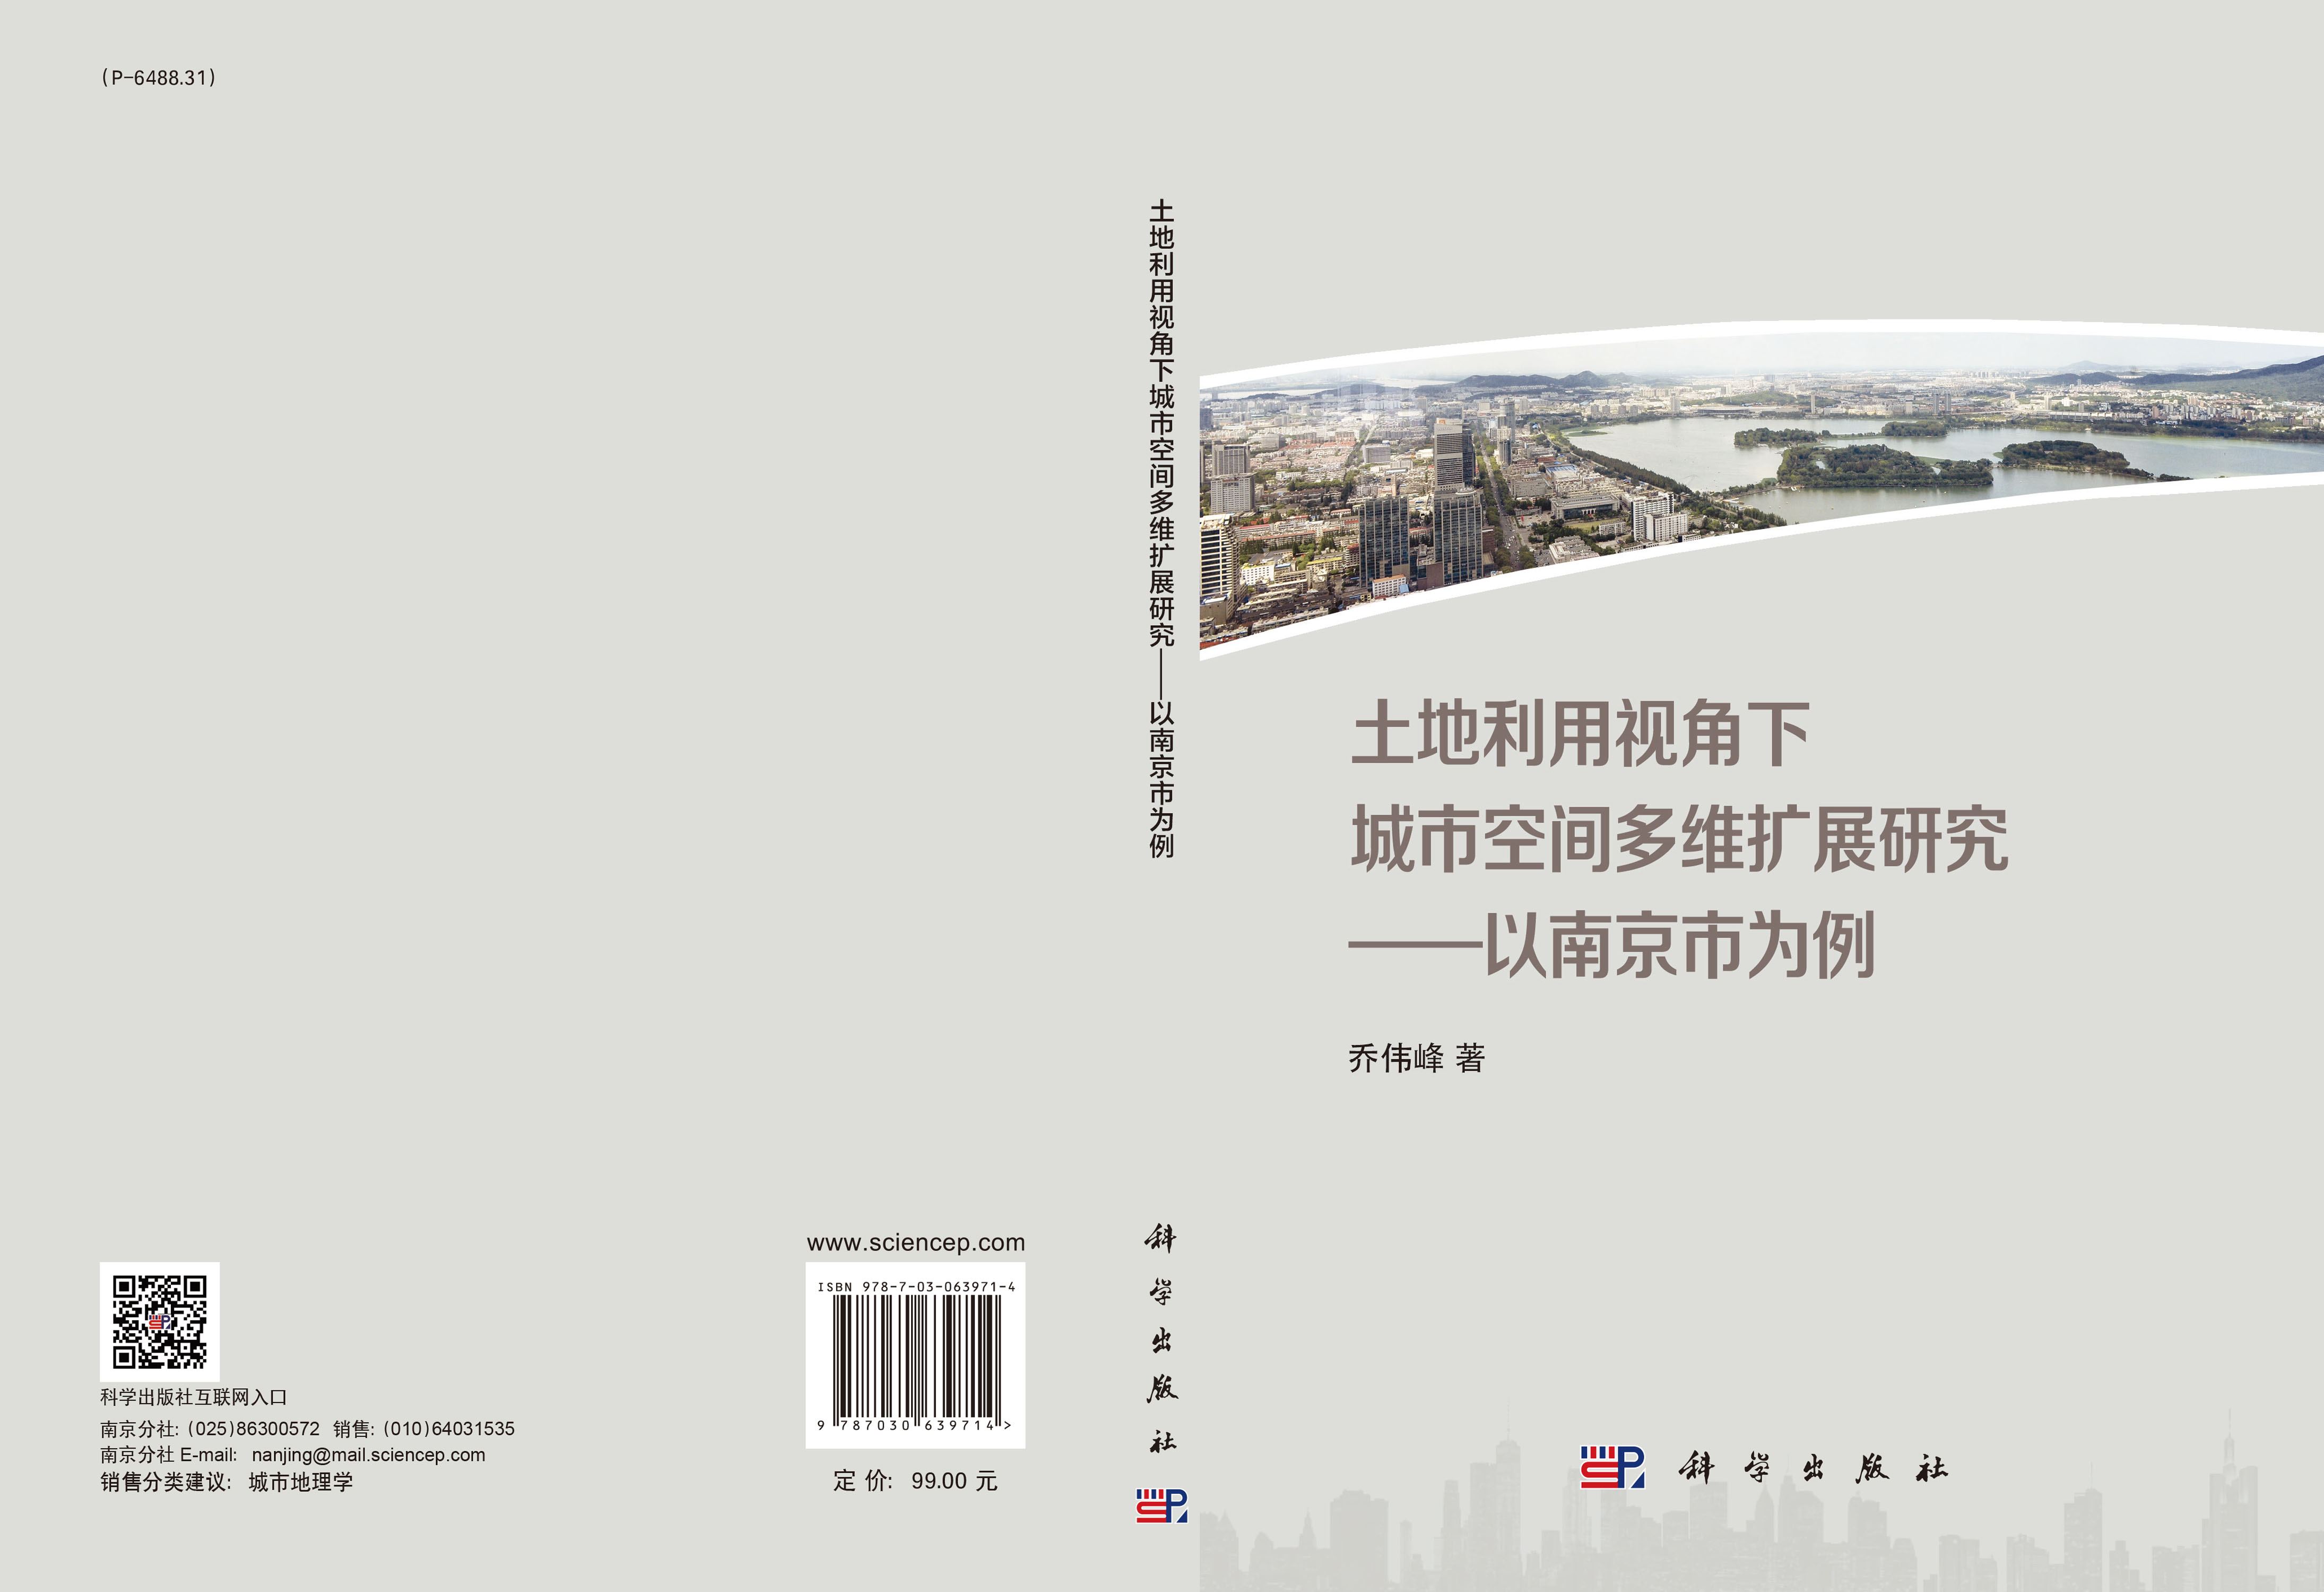 土地利用视角下城市空间多维扩展研究——以南京市为例